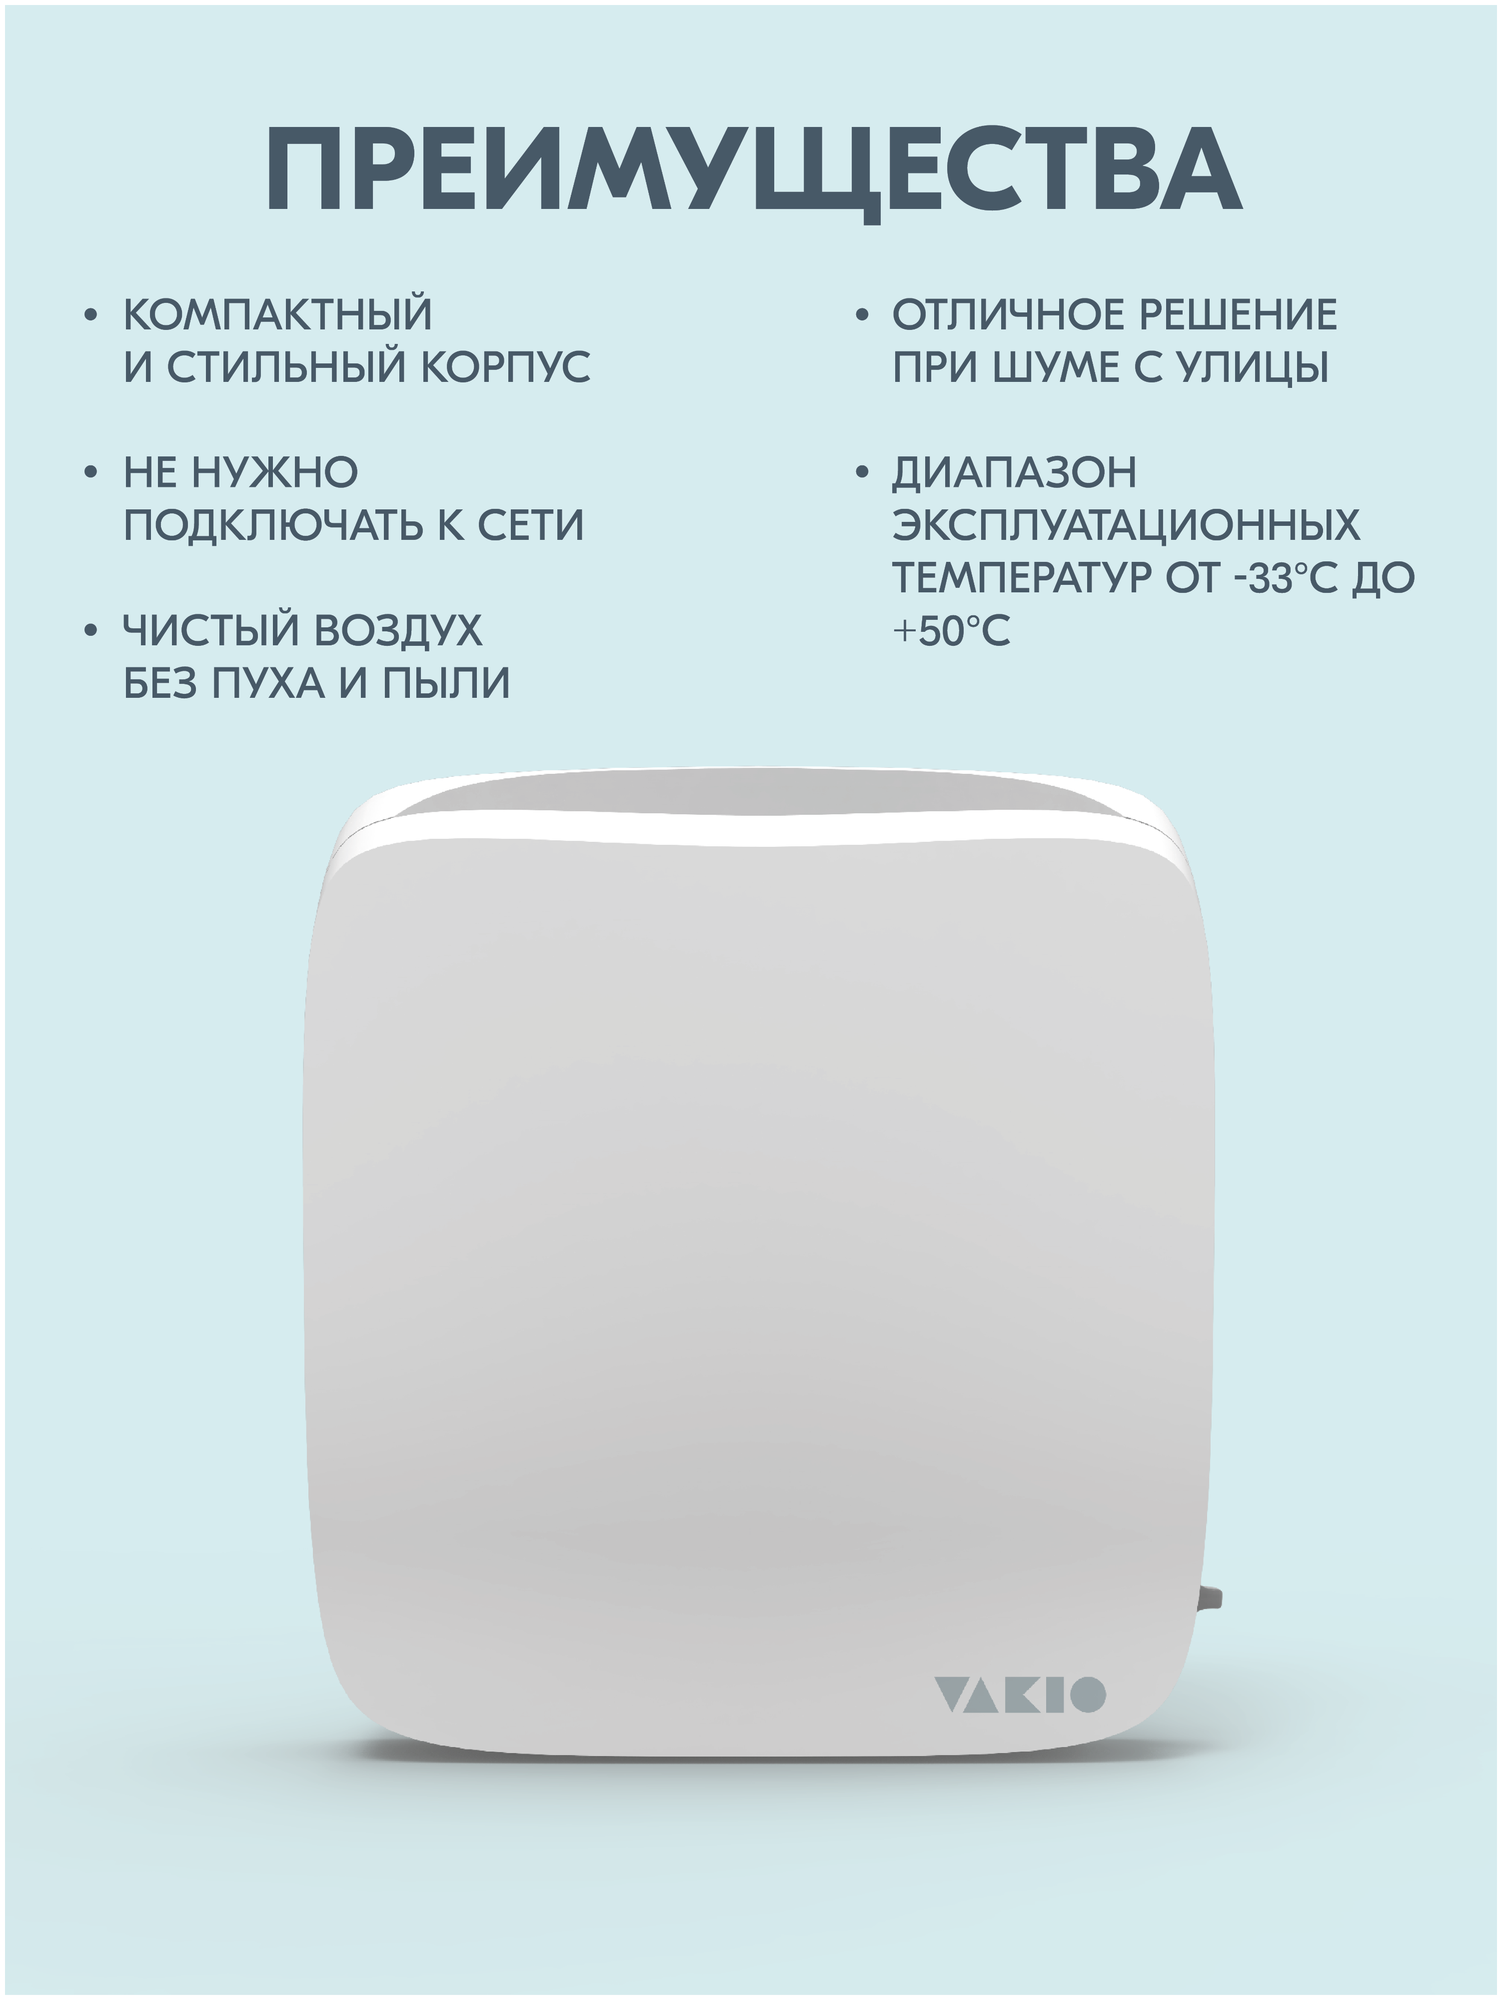 Стеновой приточный клапан VAKIO KIV PRO/ КИВ-125